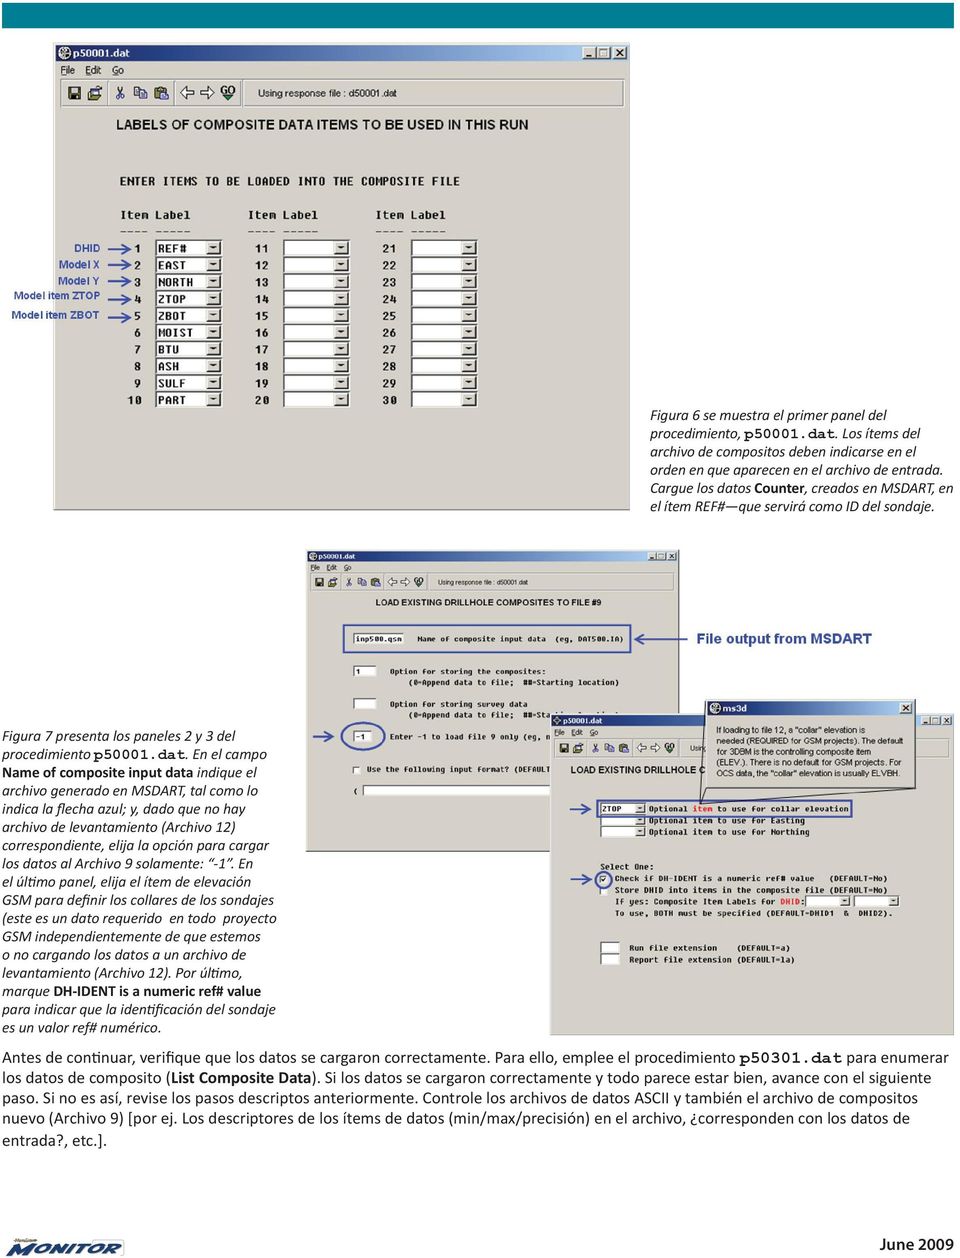 s Counter, creados en MSDART, en el ítem REF# que servirá como ID del sondaje. Figura 7 presenta los paneles 2 y 3 del procedimiento p50001.dat.